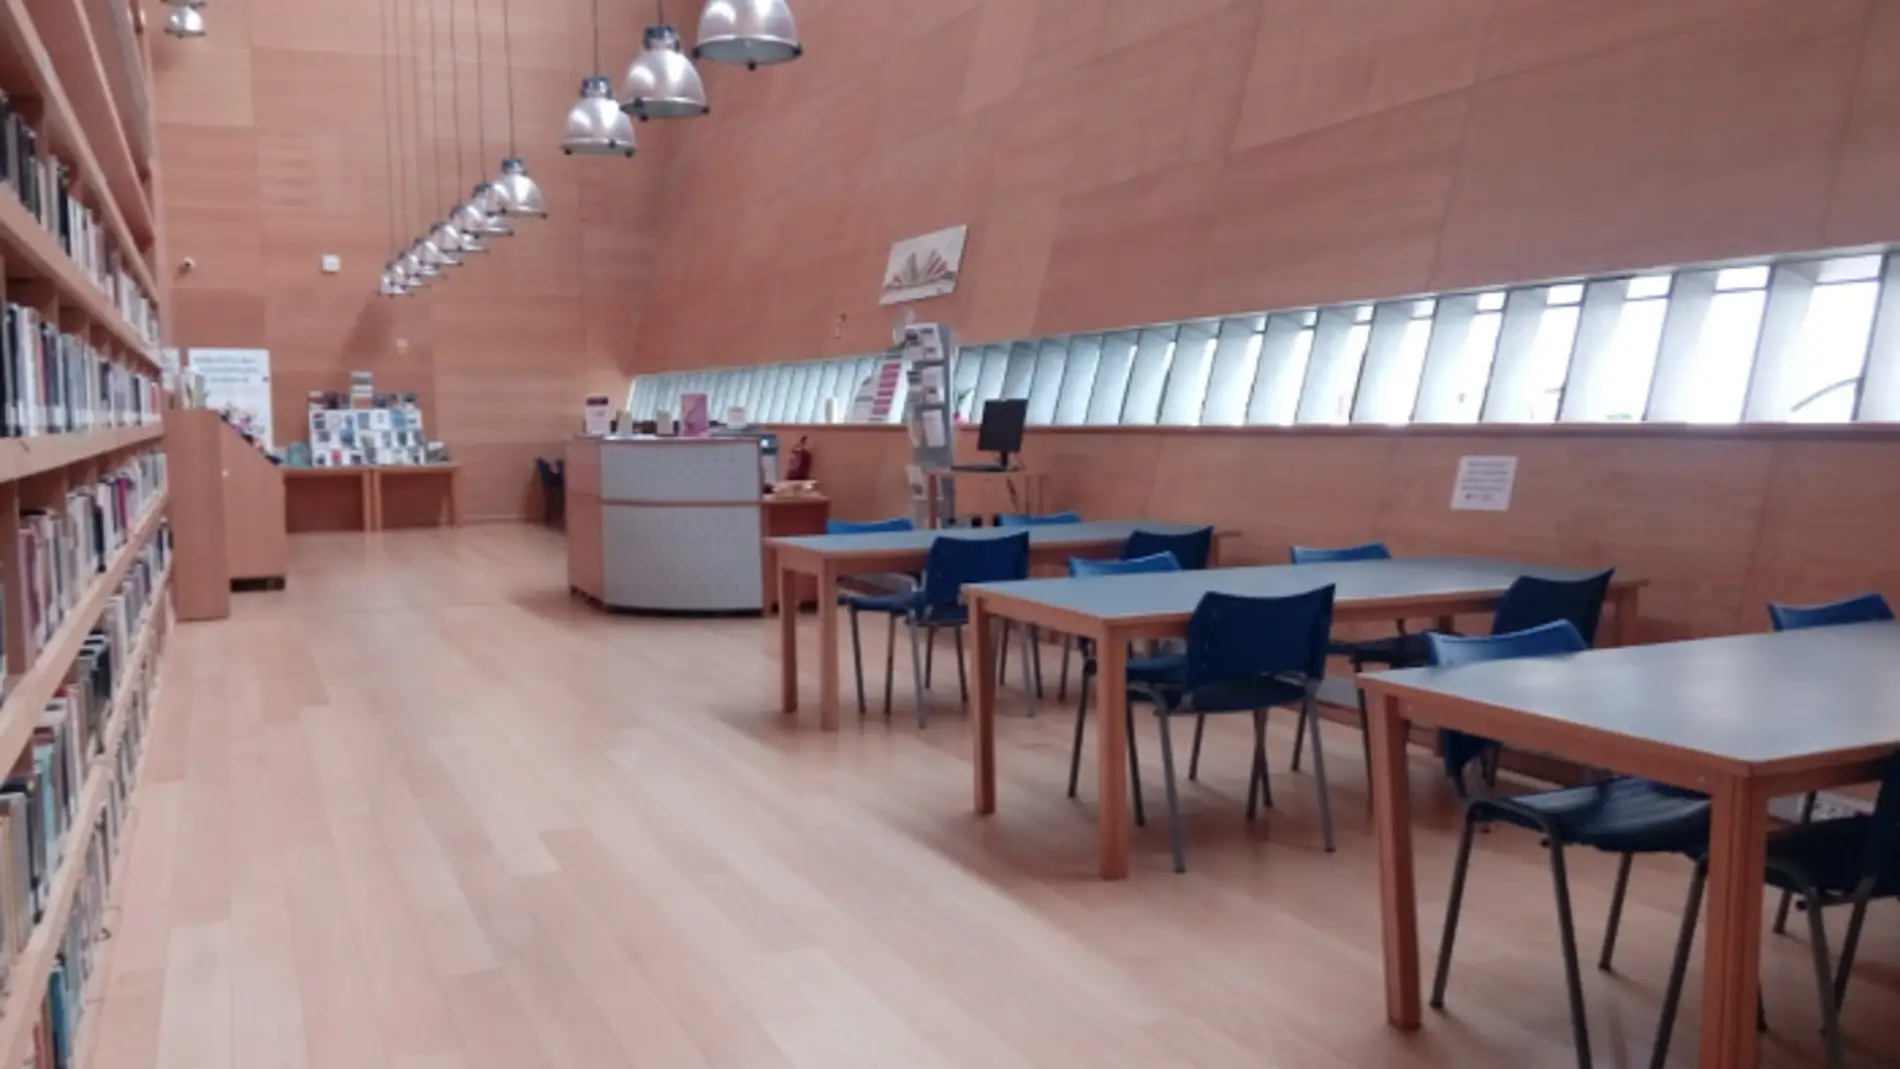 Cierran la biblioteca Ramón J. Sender de Huesca para revisar el falso techo